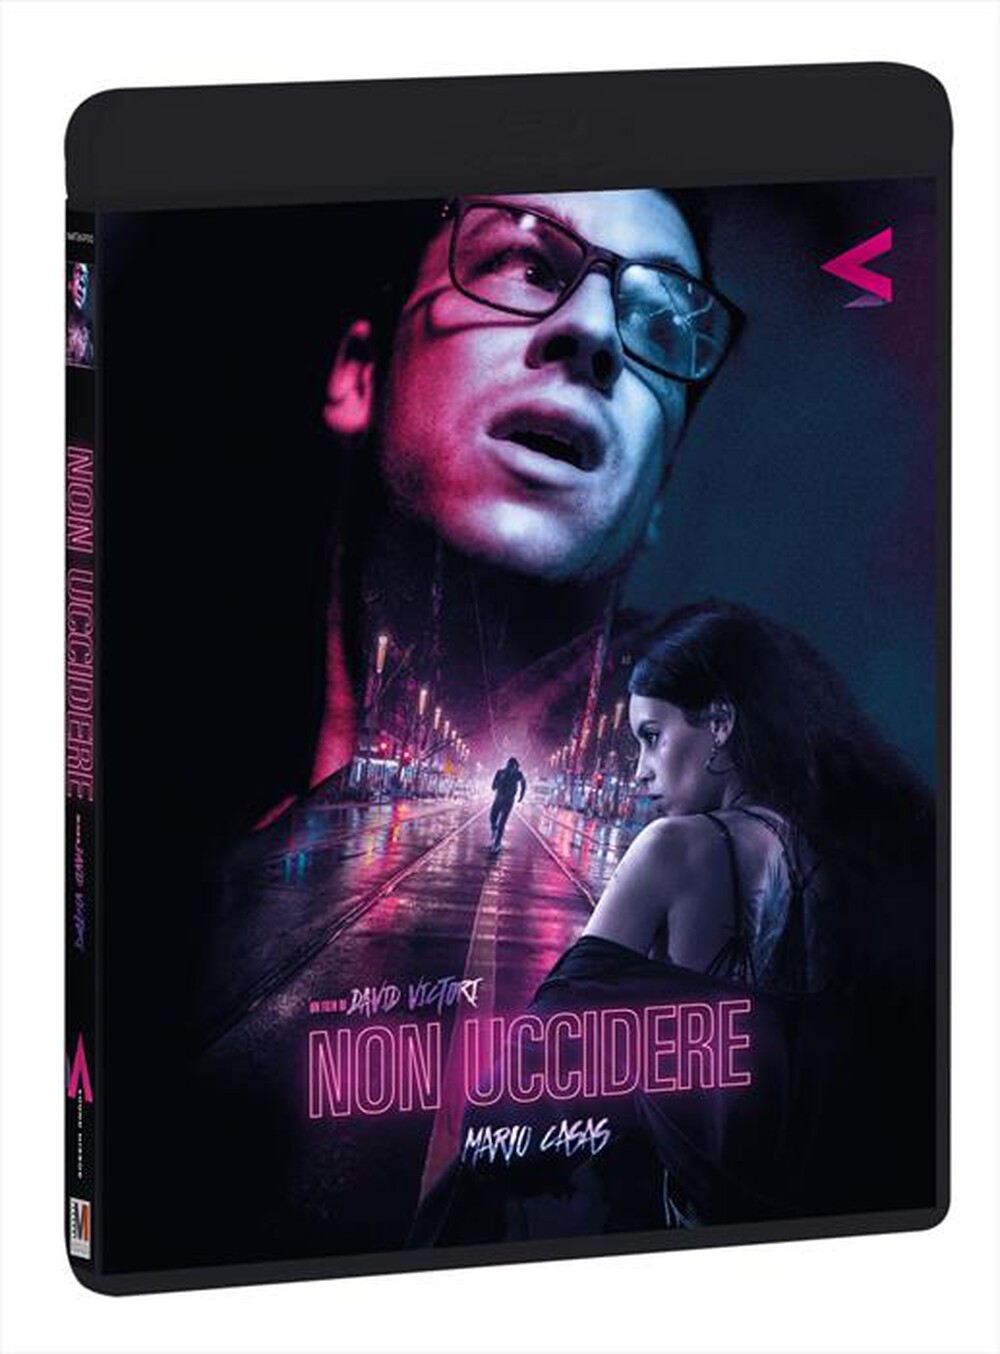 "Sound Mirror - Non Uccidere (Blu-Ray+Dvd)"